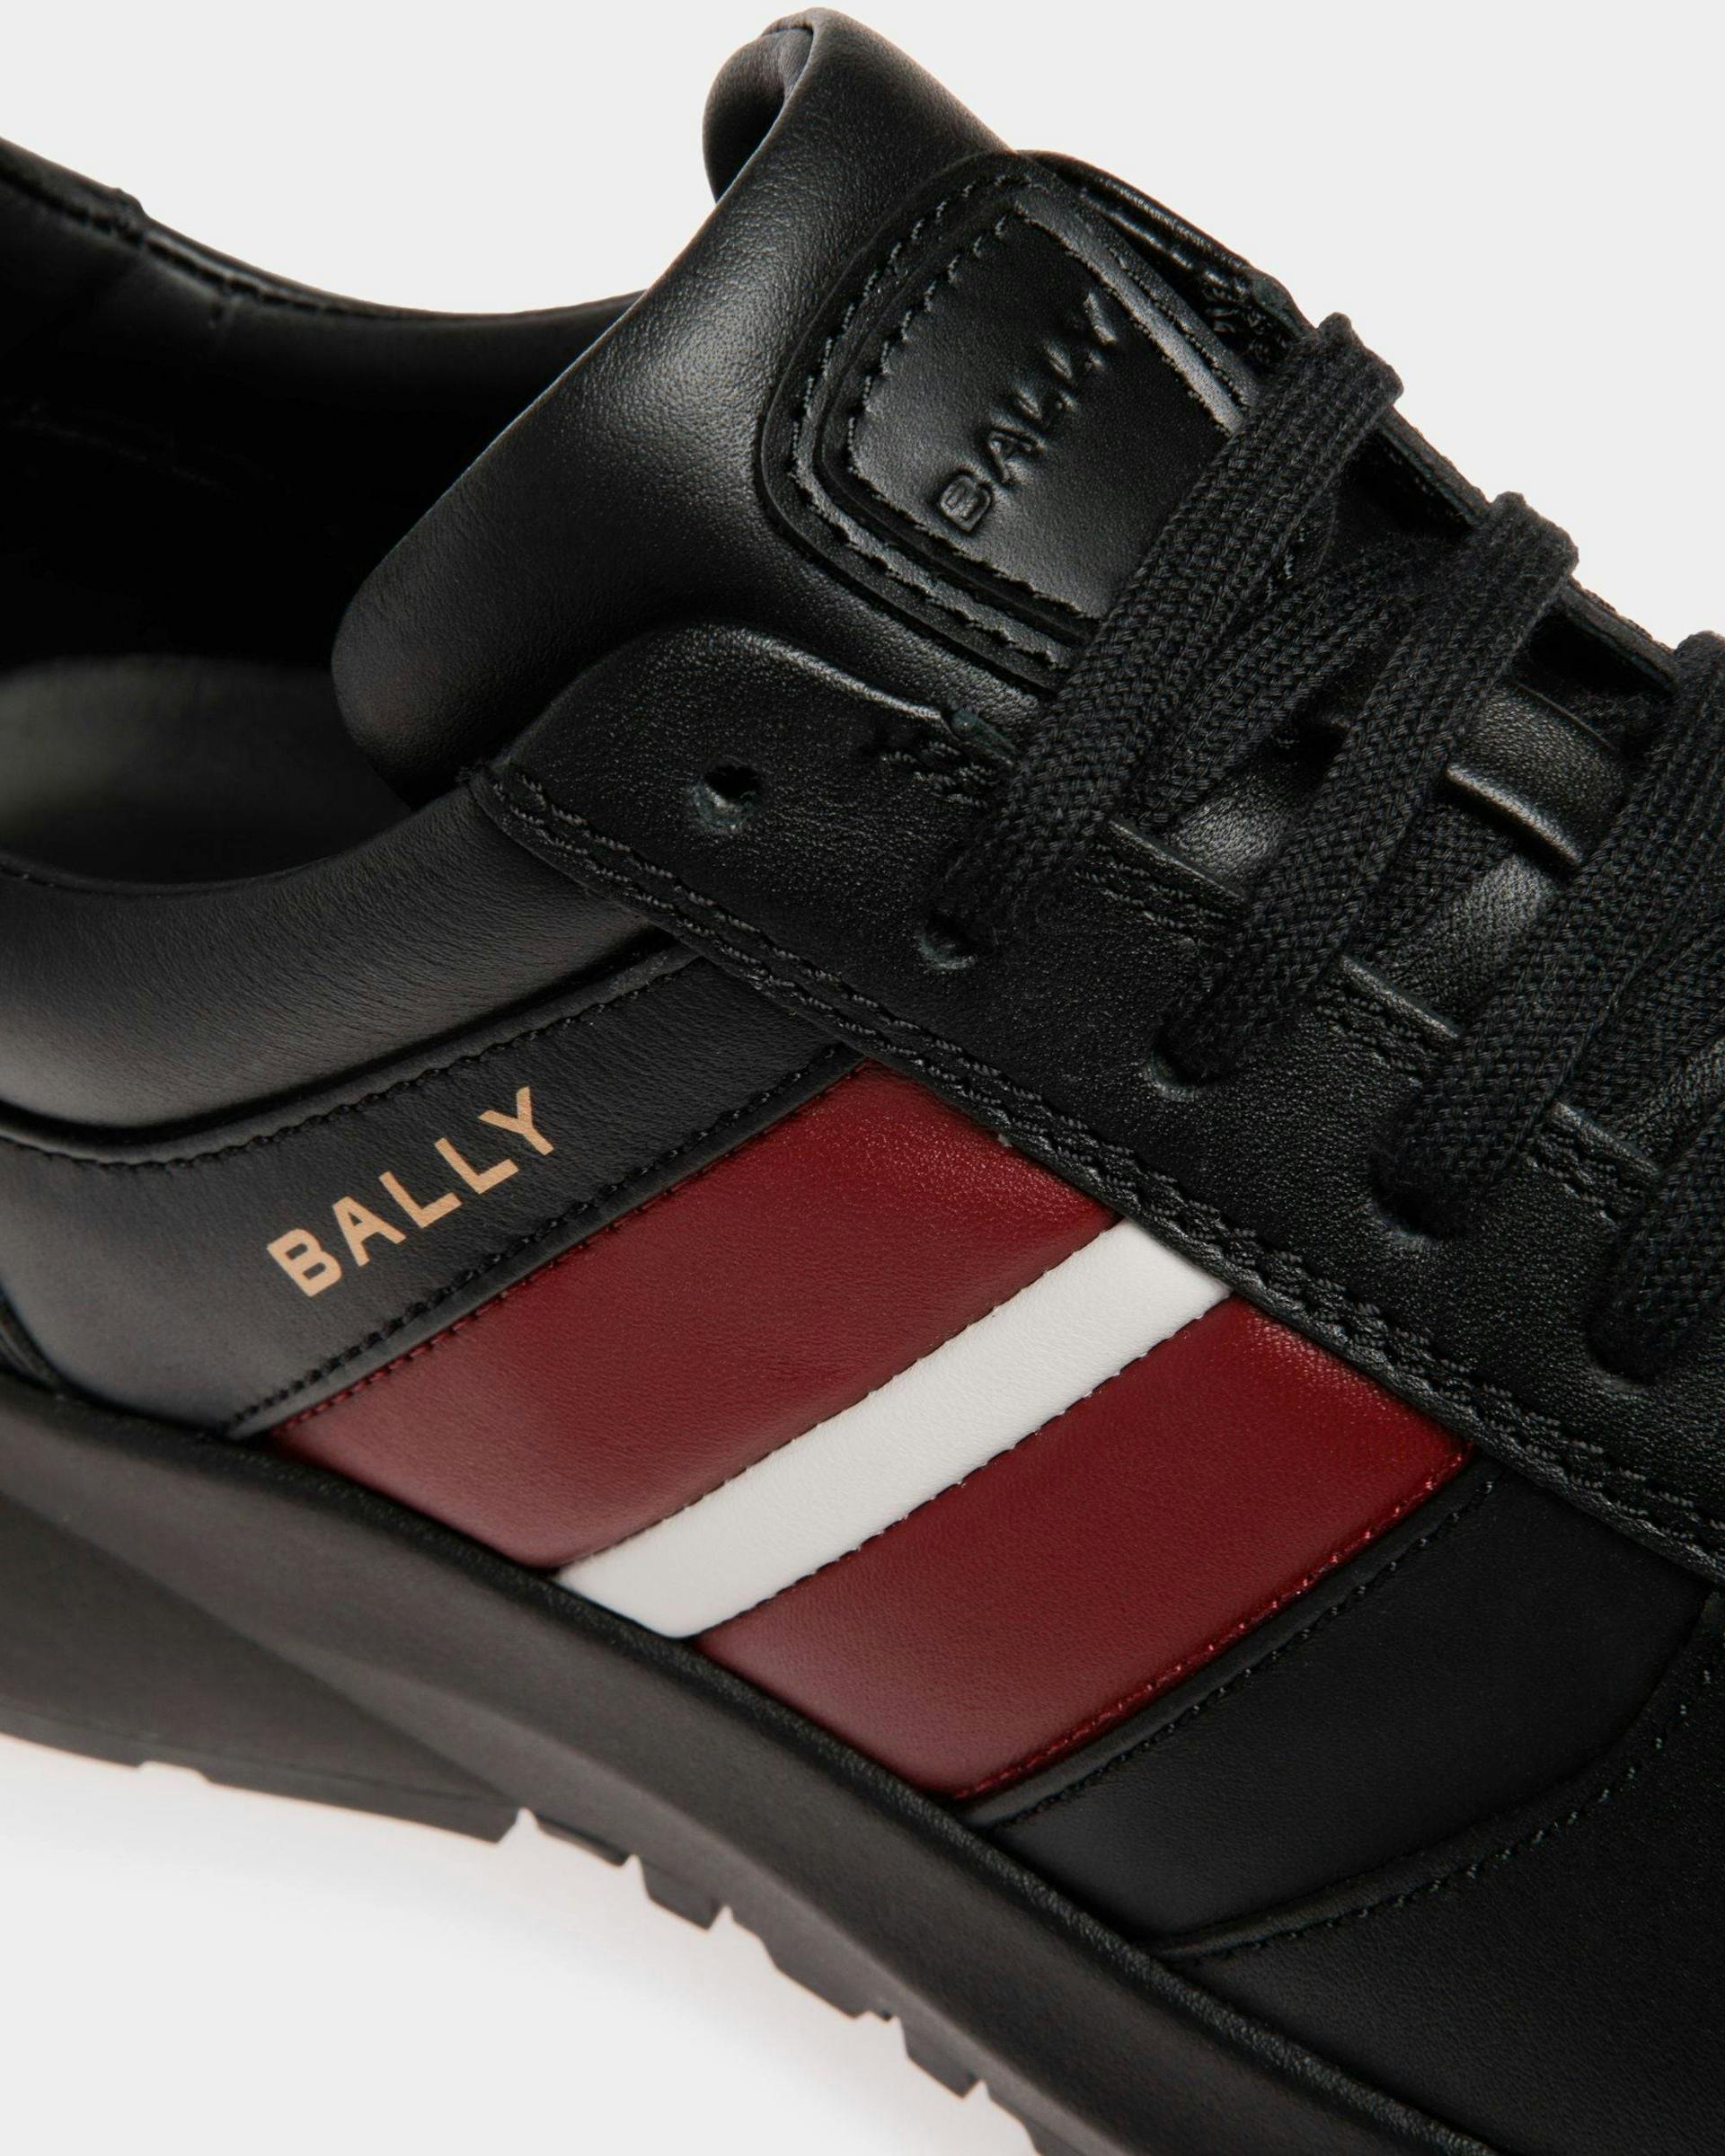 Men's Outline Sneaker In Black Leather | Bally | Still Life Detail